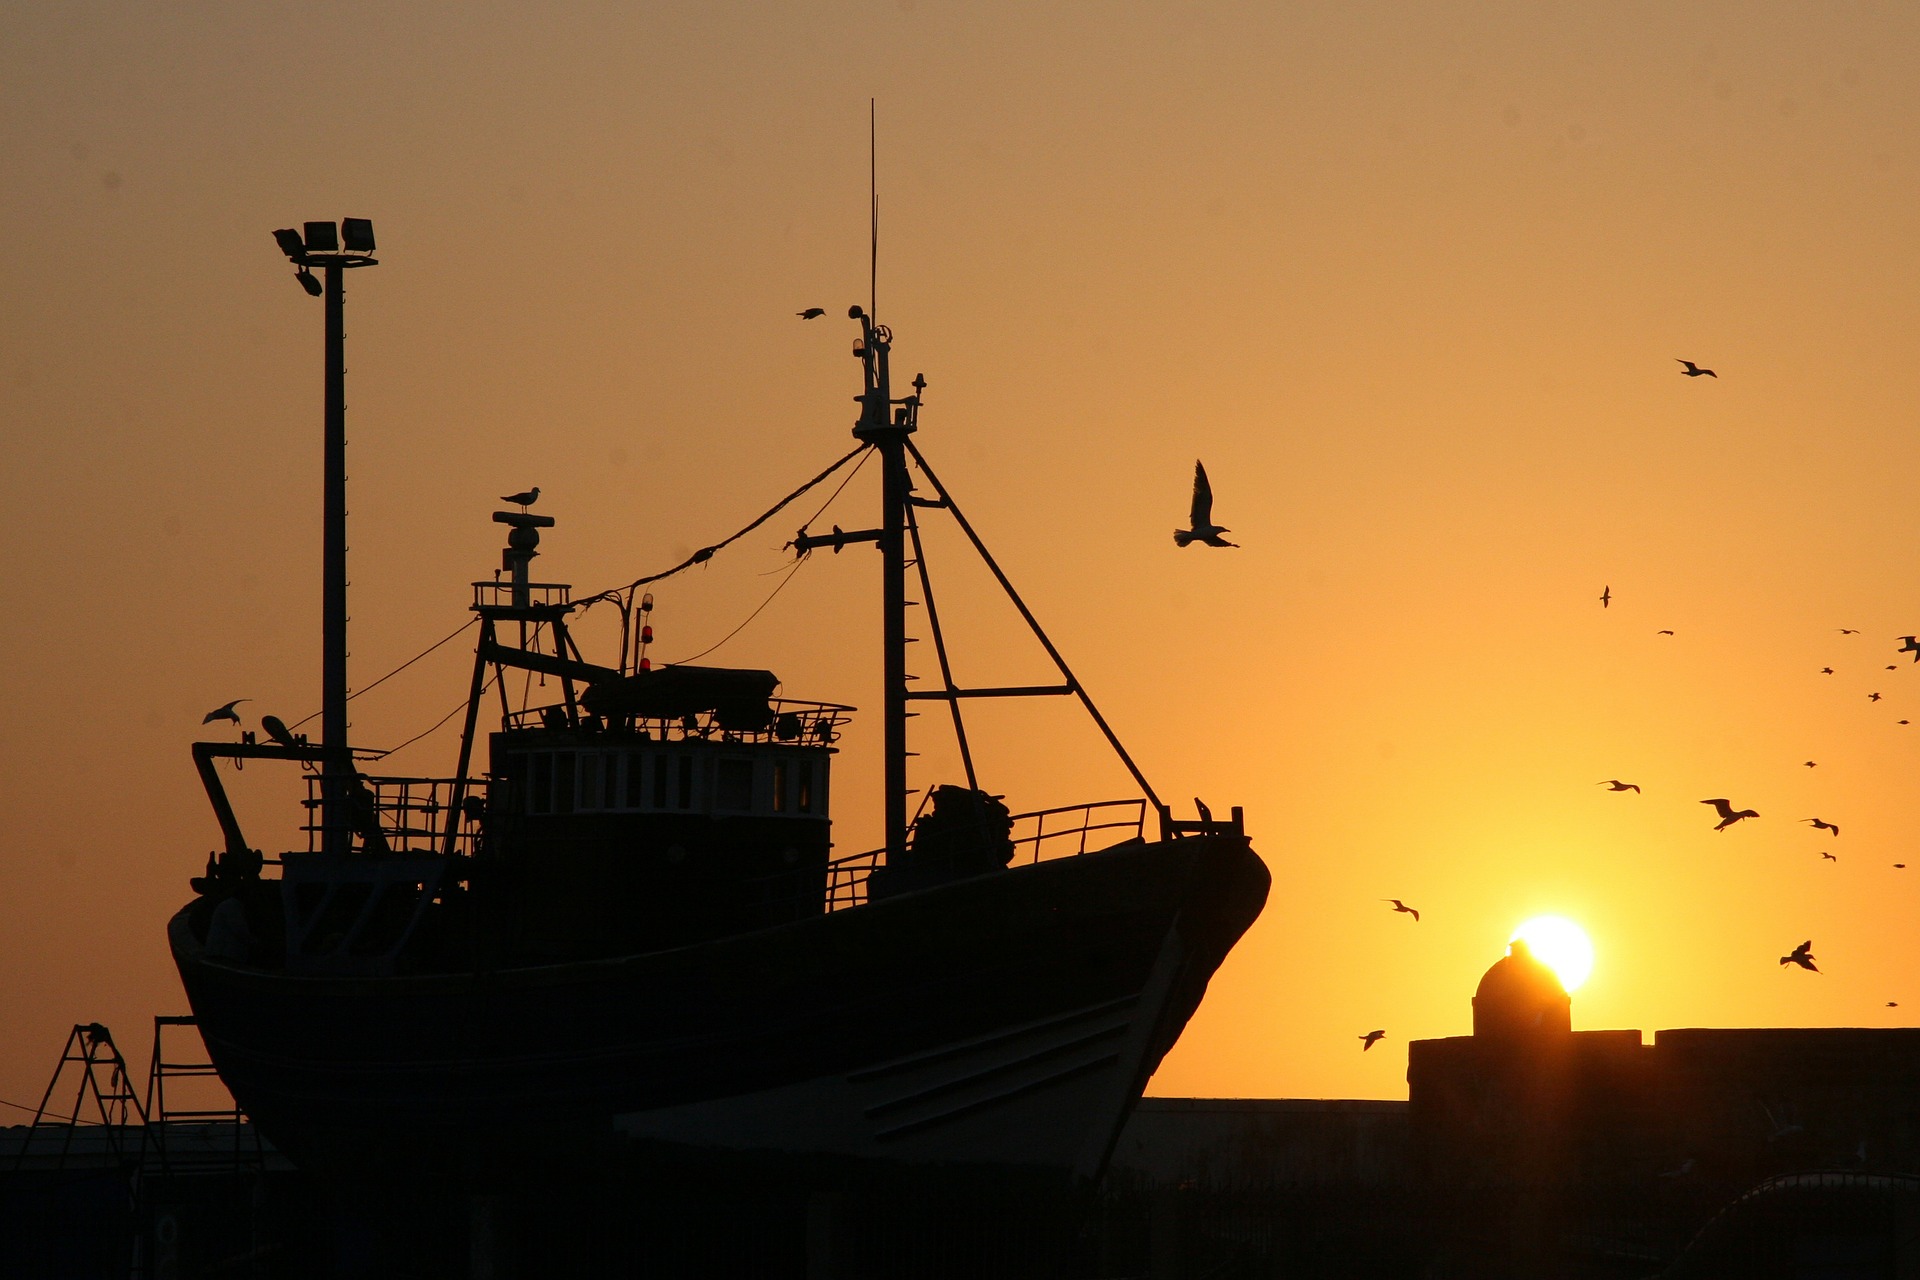 Ein Fischereiboot liegt im Wasser, der Himmel ist orange durch den Sonnenuntergang